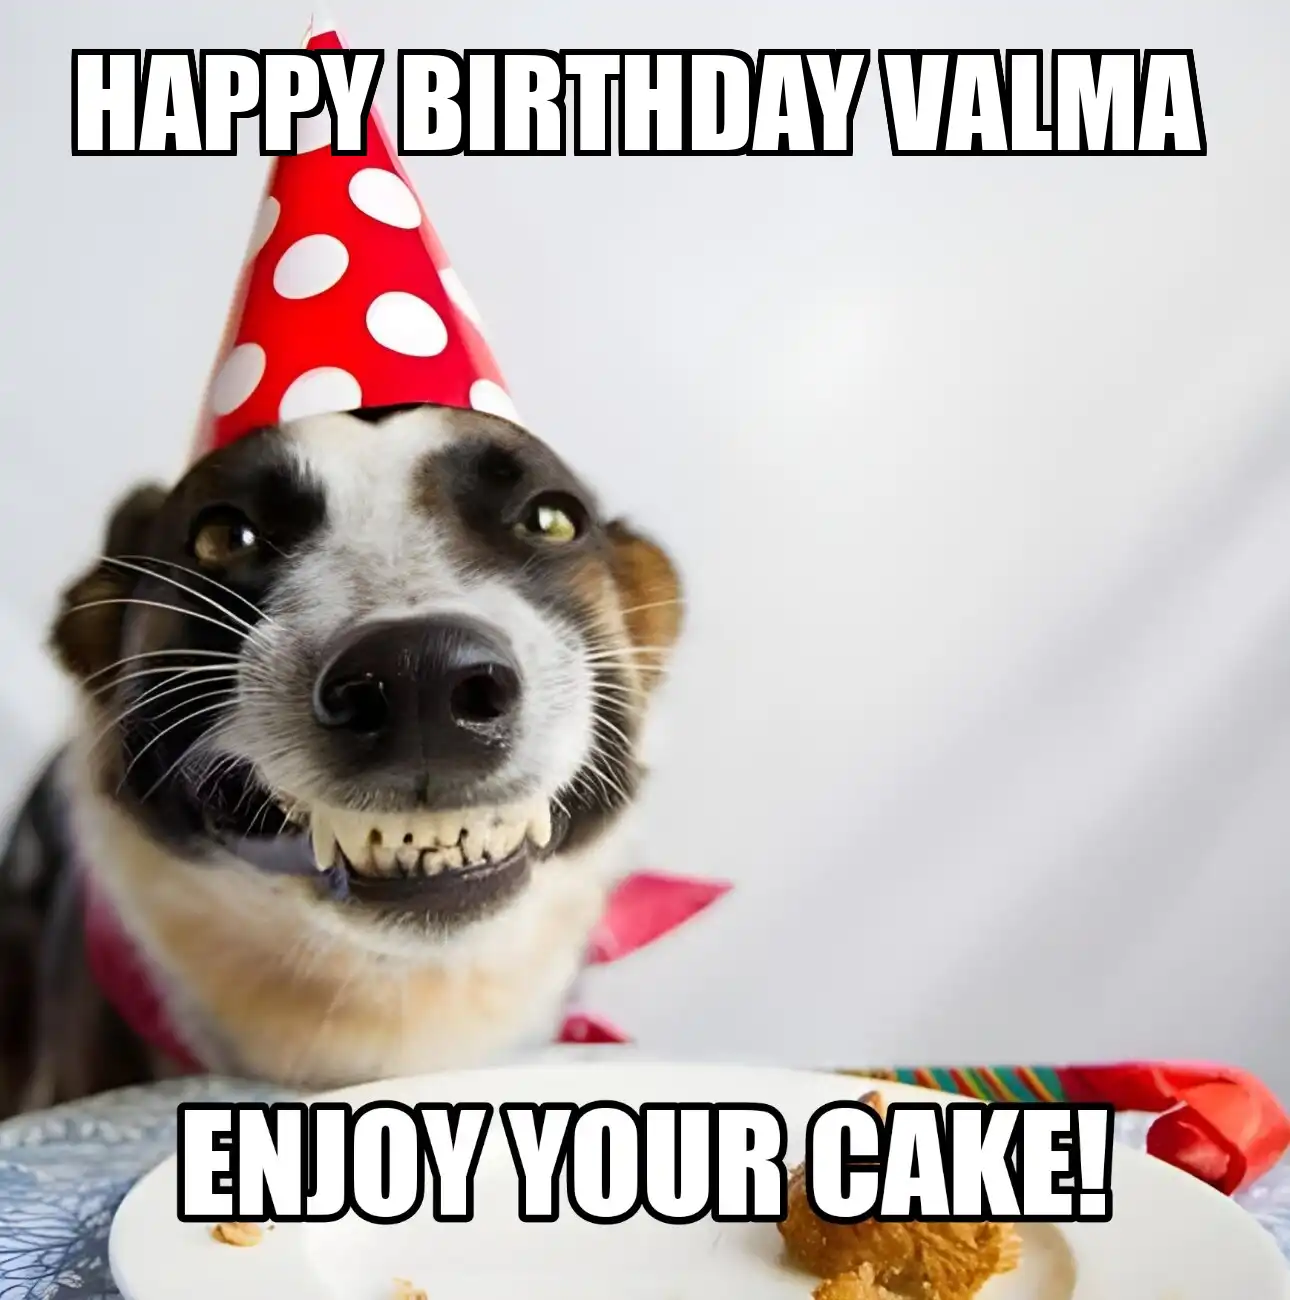 Happy Birthday Valma Enjoy Your Cake Dog Meme